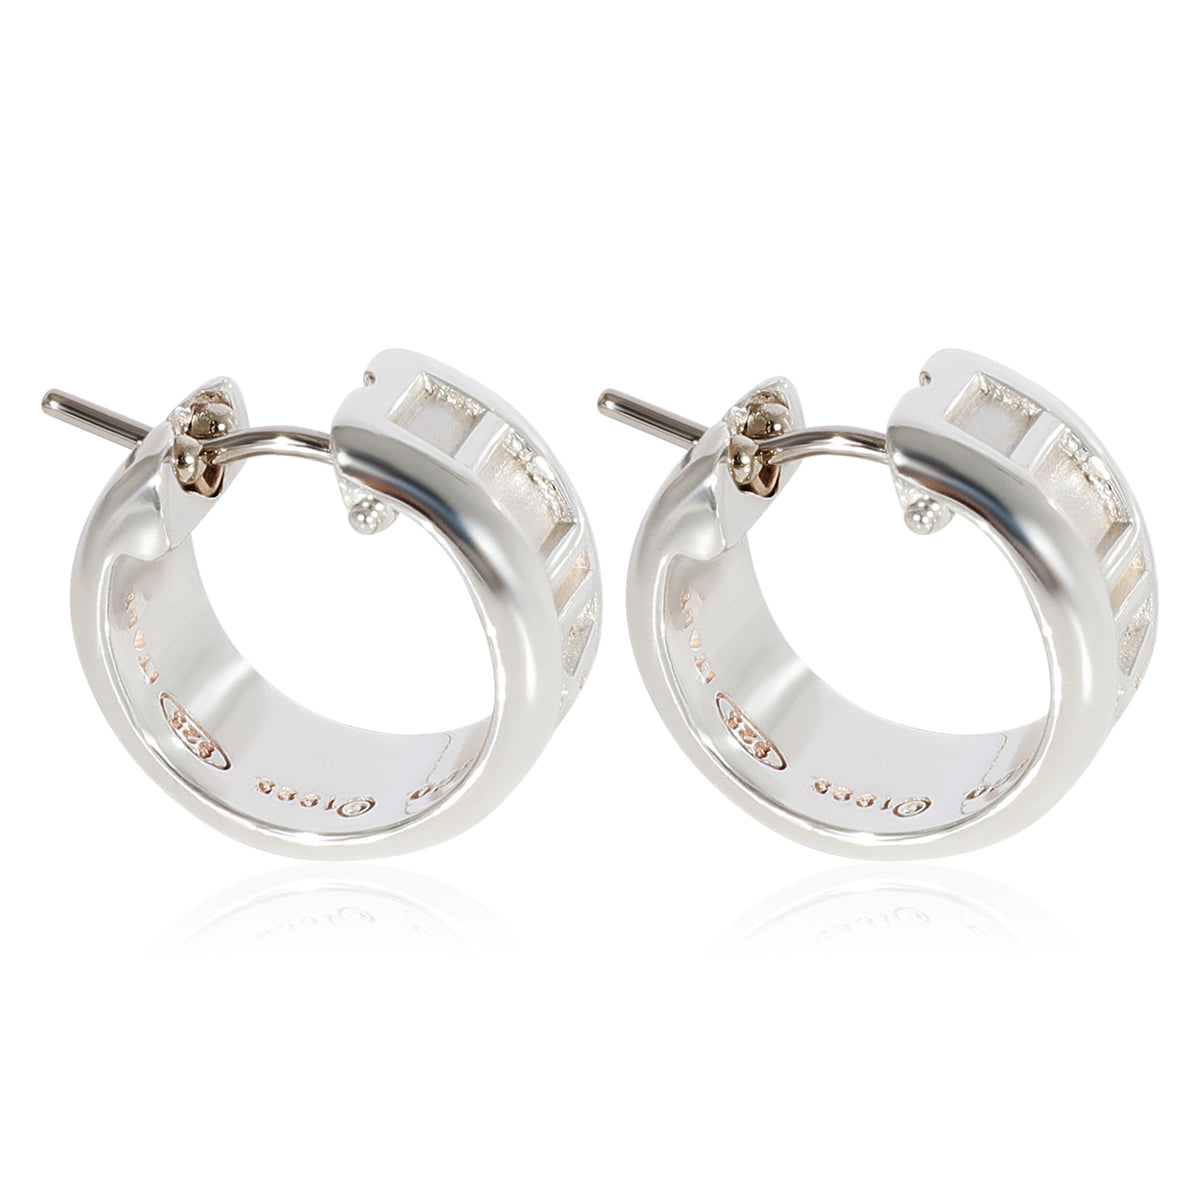 Tiffany & Co. Atlas Huggie Earrings in Sterling Silver